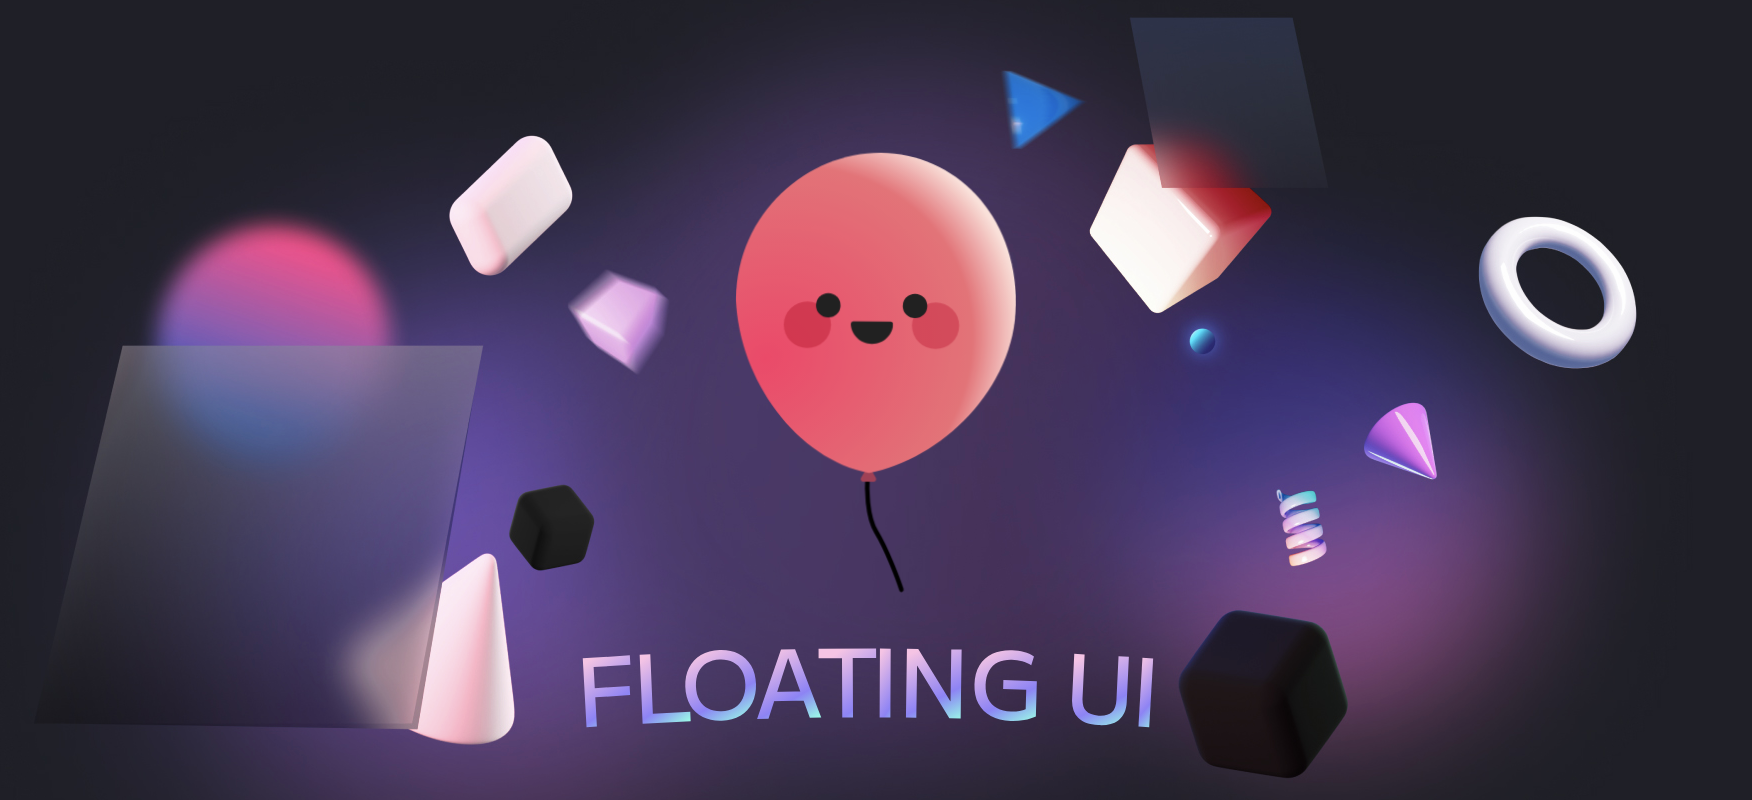 FloatingUI - Post Image